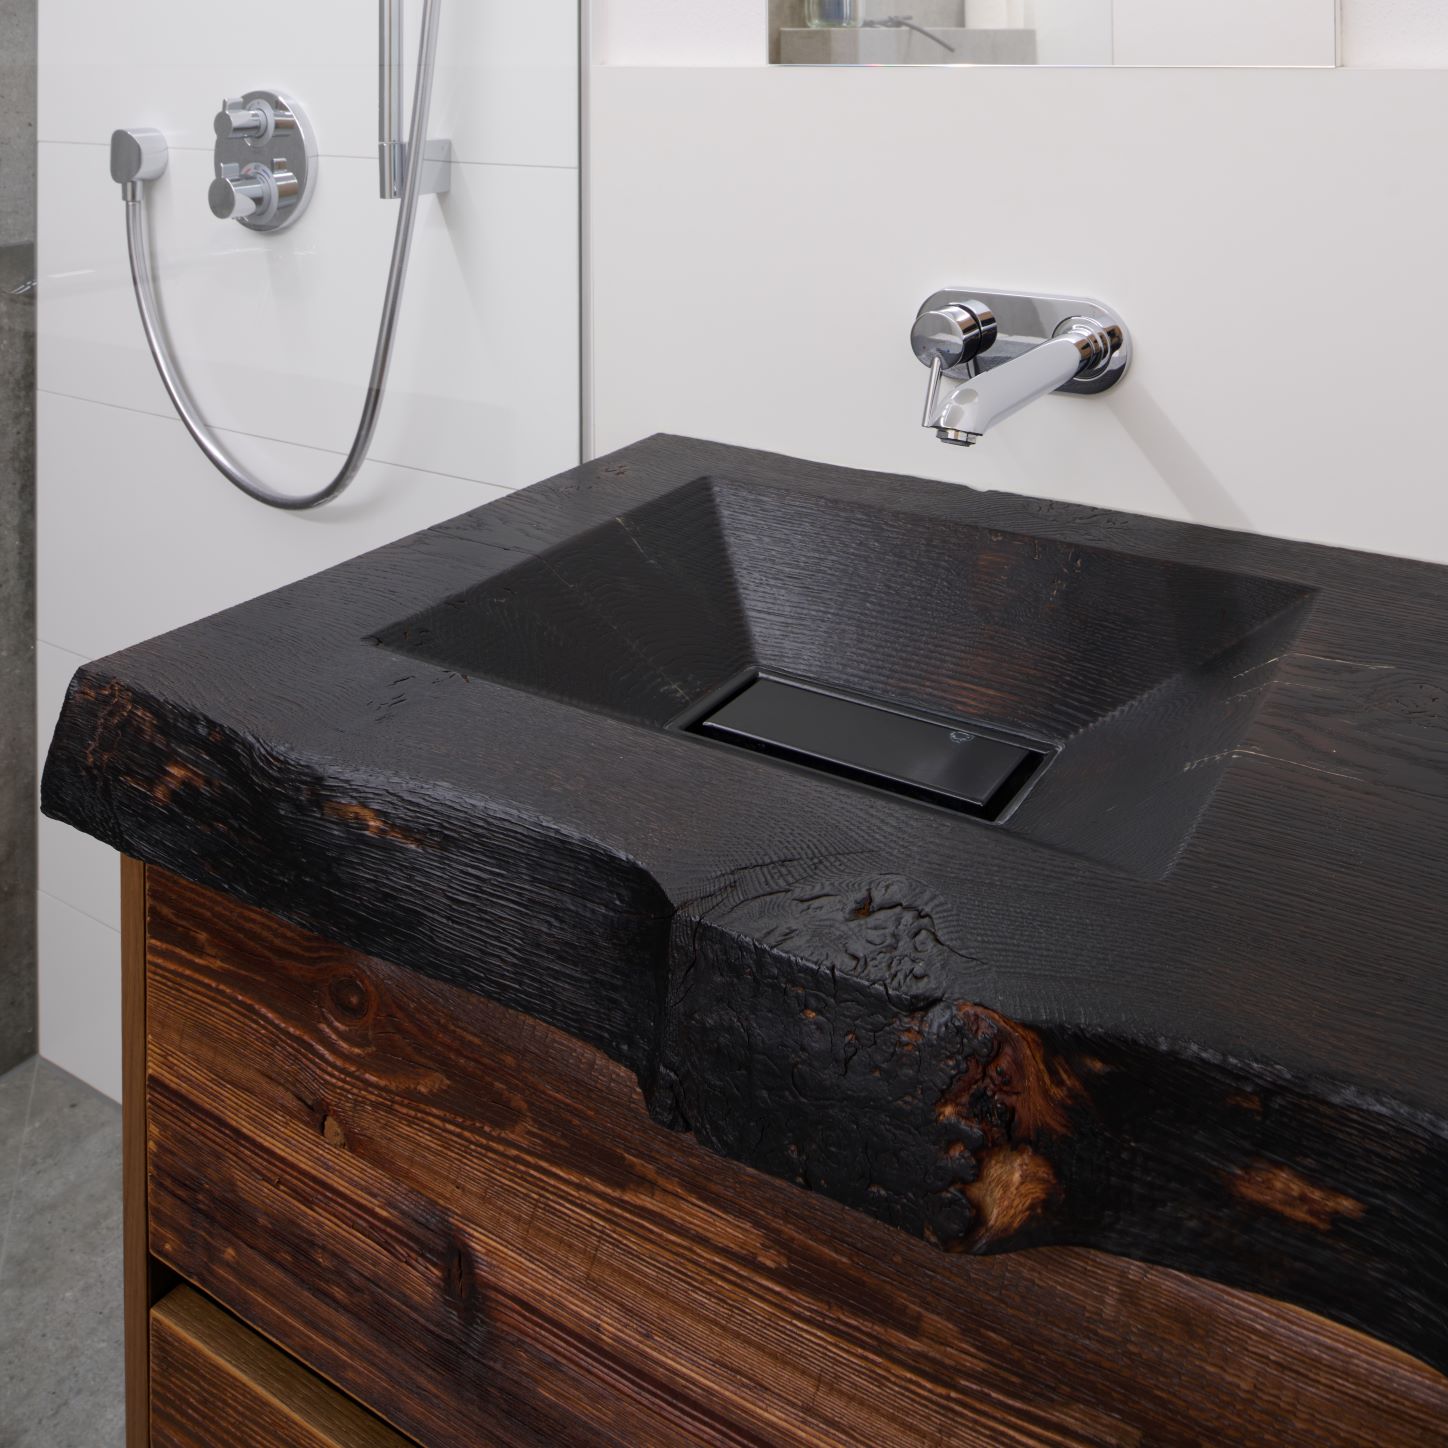 Detailaufnahme Waschbecken mit Unterschrank aus altem Holz